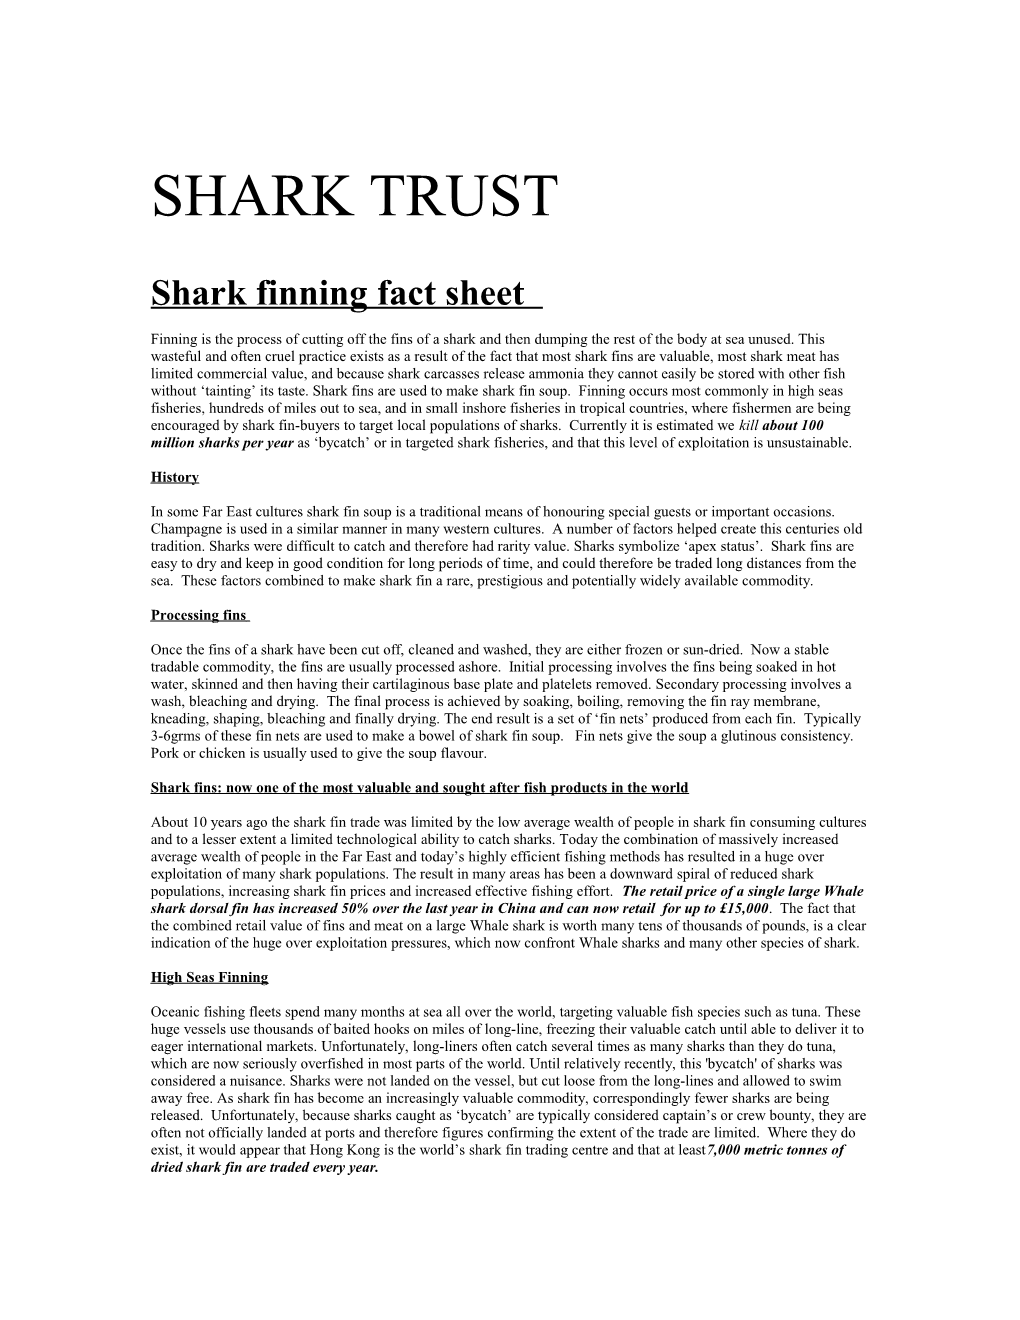 Shark Finning Fact Sheet